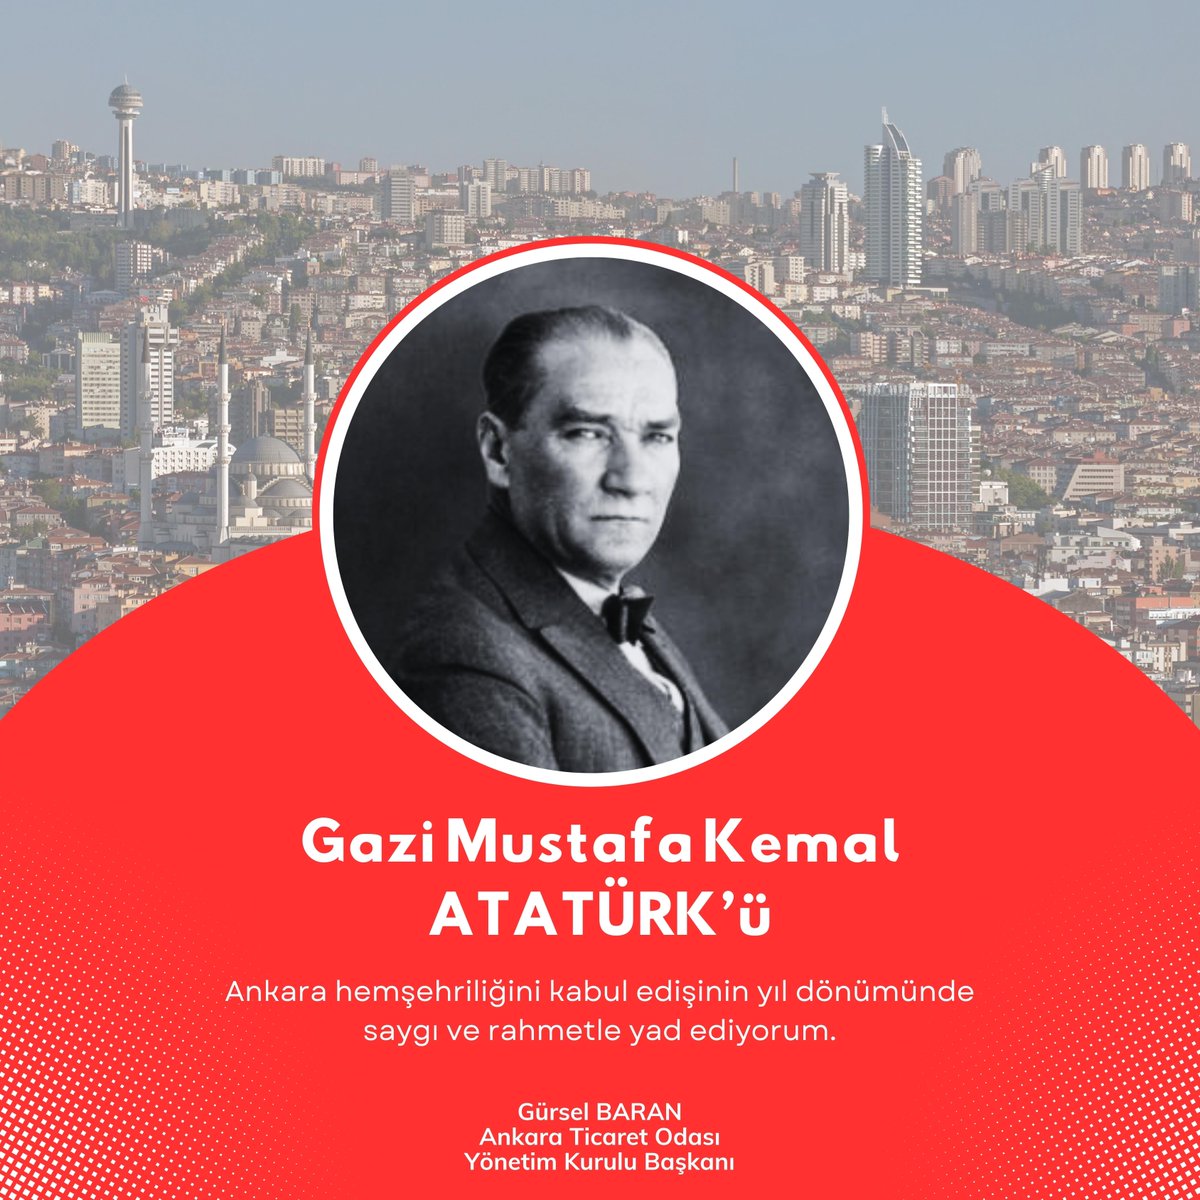 “Ankara'nın ve Ankaralıların benim gönlümde bambaşka bir yeri vardır' Ankara'yı ülkemizin kalbi olarak seçen Cumhuriyetimizin Kurucusu Gazi Mustafa Kemal Atatürk'ün, #Ankara Hemşehrilik Kabulü’nün 101. yılı kutlu olsun.